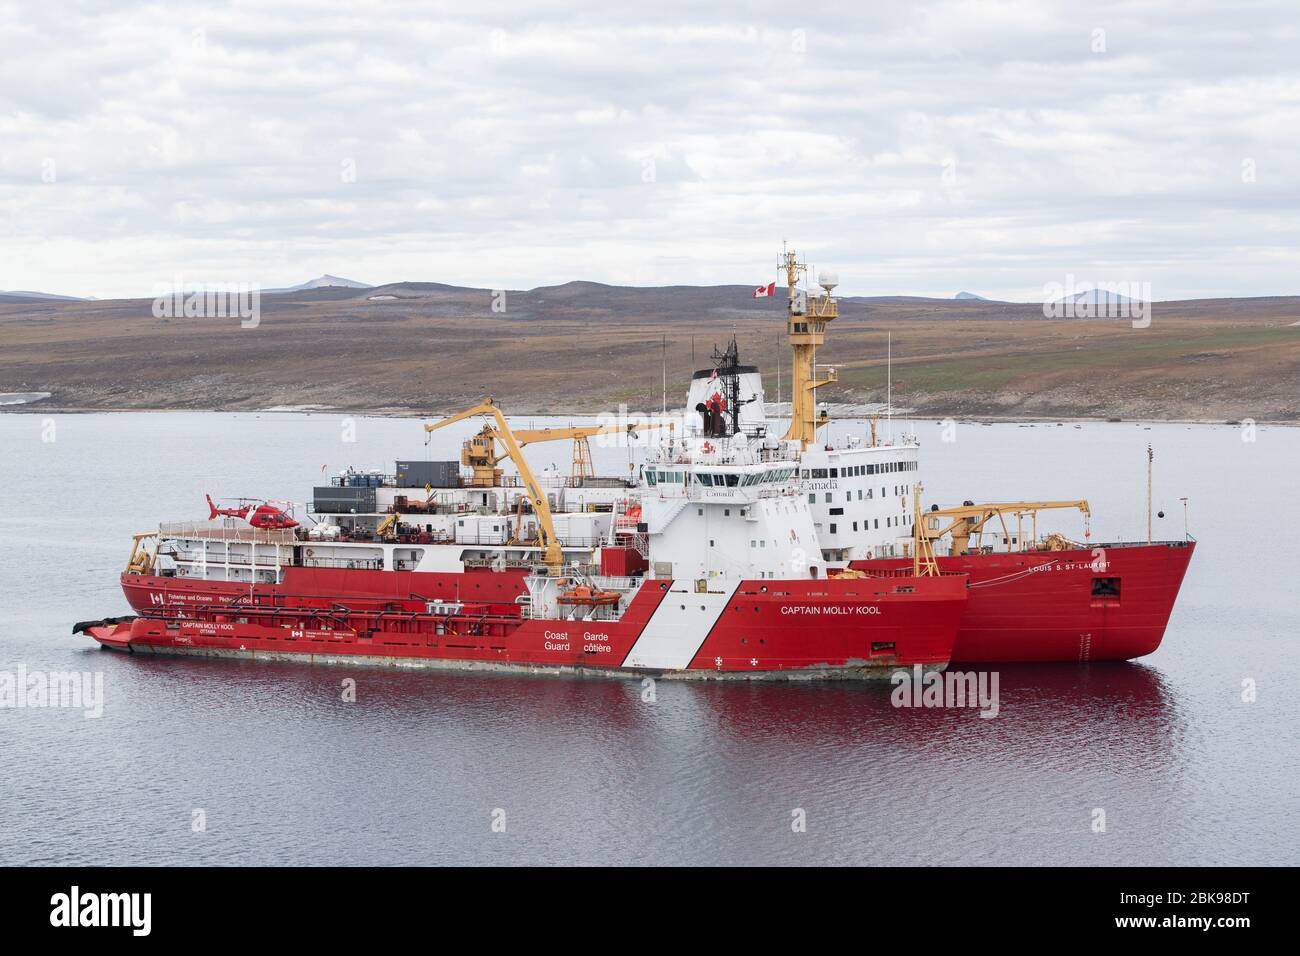 Guardia Costera Canadiense en el Ártico Foto de stock